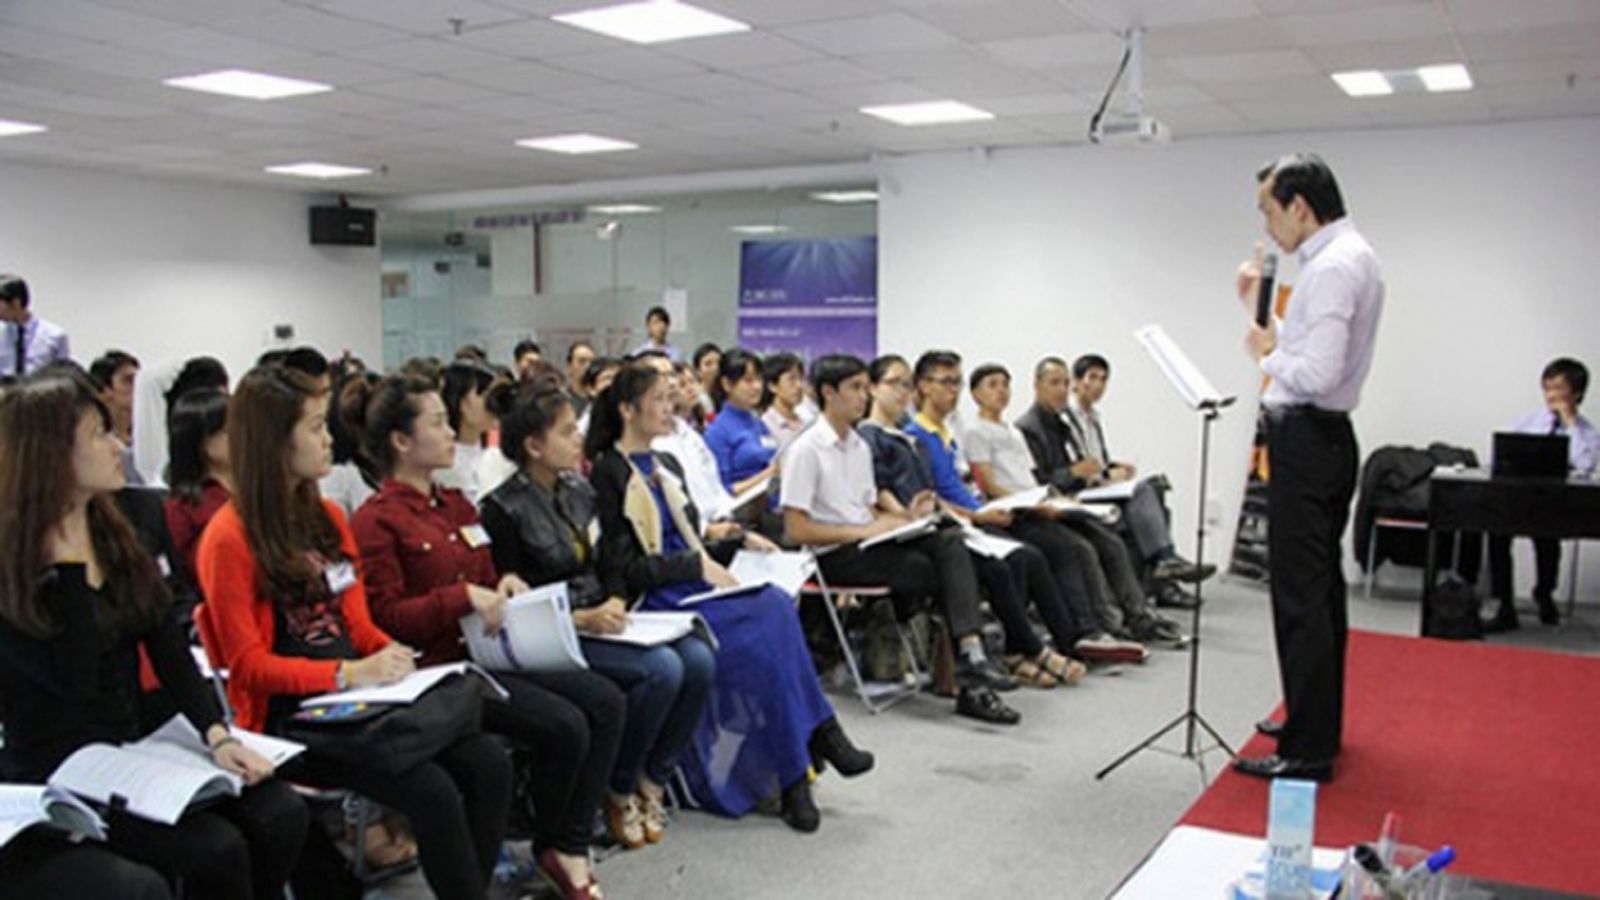  Công ty CP đầu tư Thiên Rồng Việt lấy danh nghĩa liên kết với nhiều công ty khác thực hiện dự án để huy động vốn.